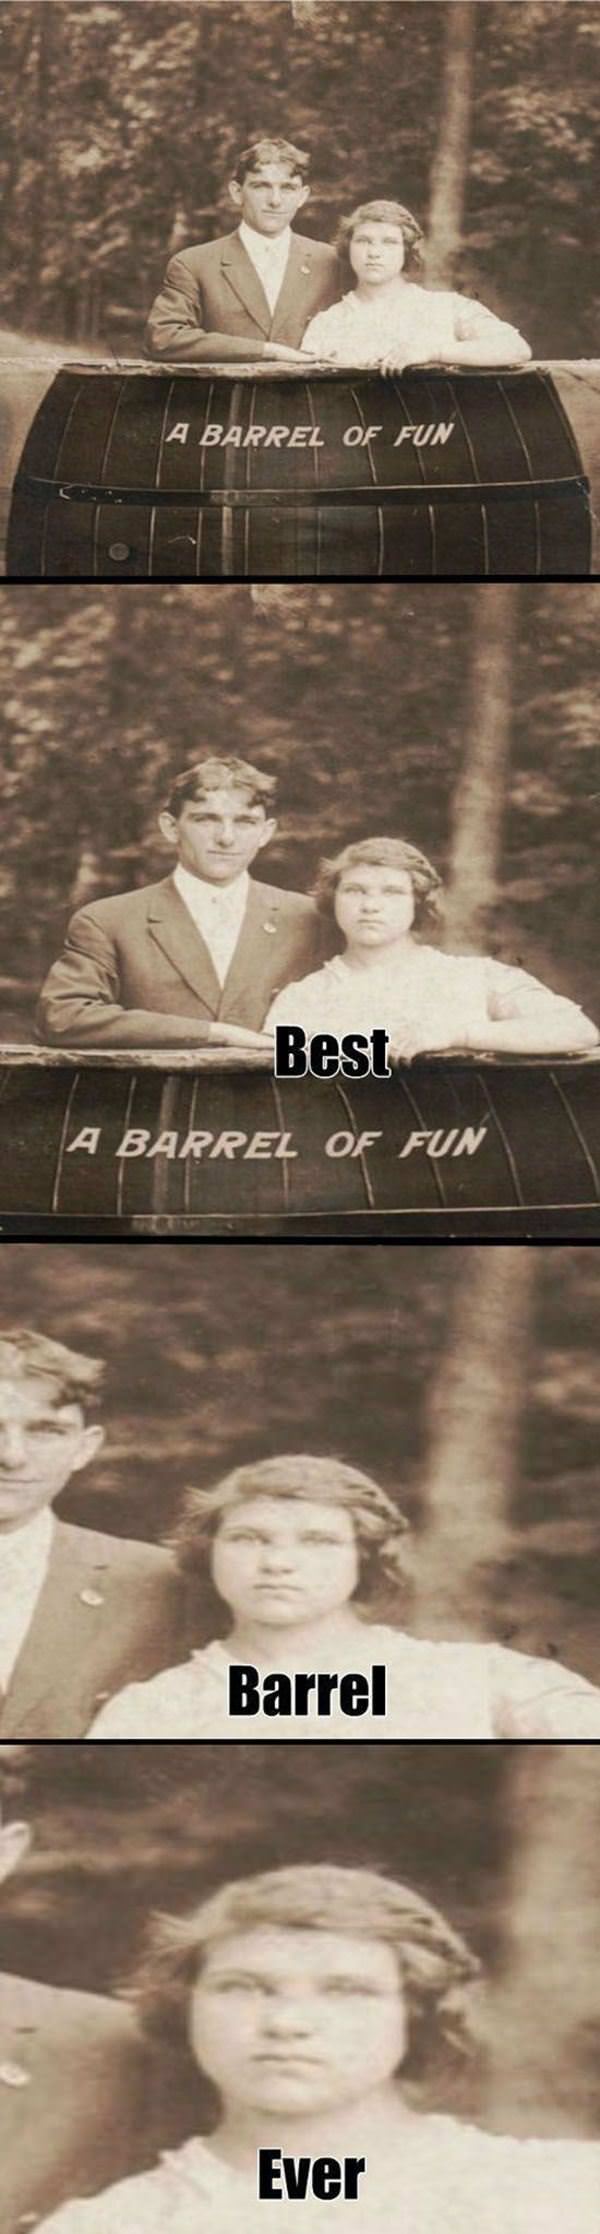 Barrel Of Fun